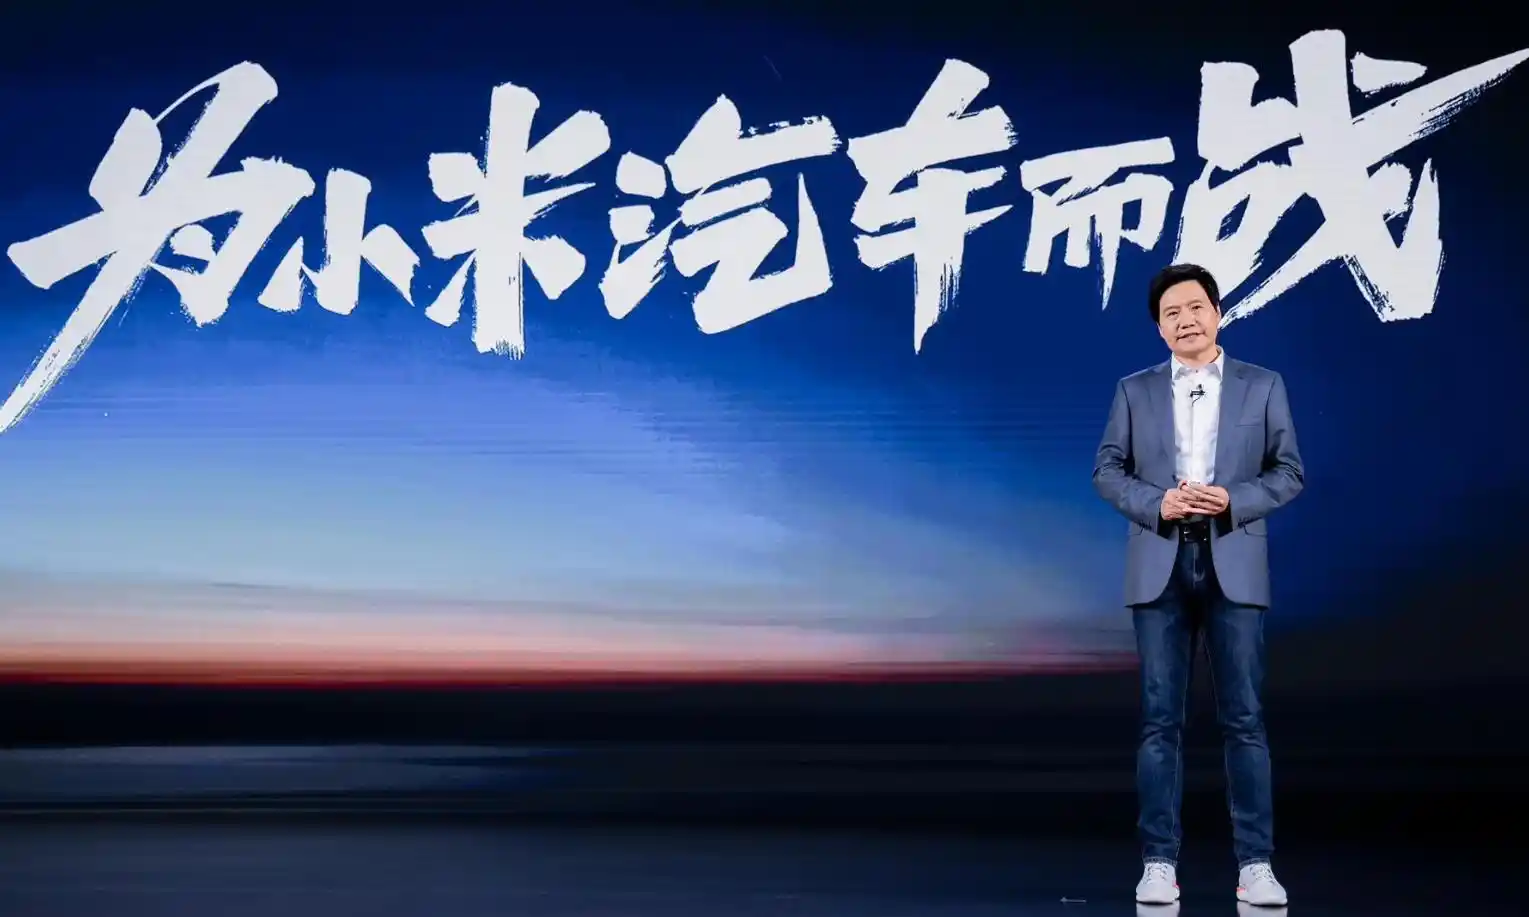 小米Xiaomi汽车技术发布会即将举行 雷军剧透技术突破与移动智能空间愿景